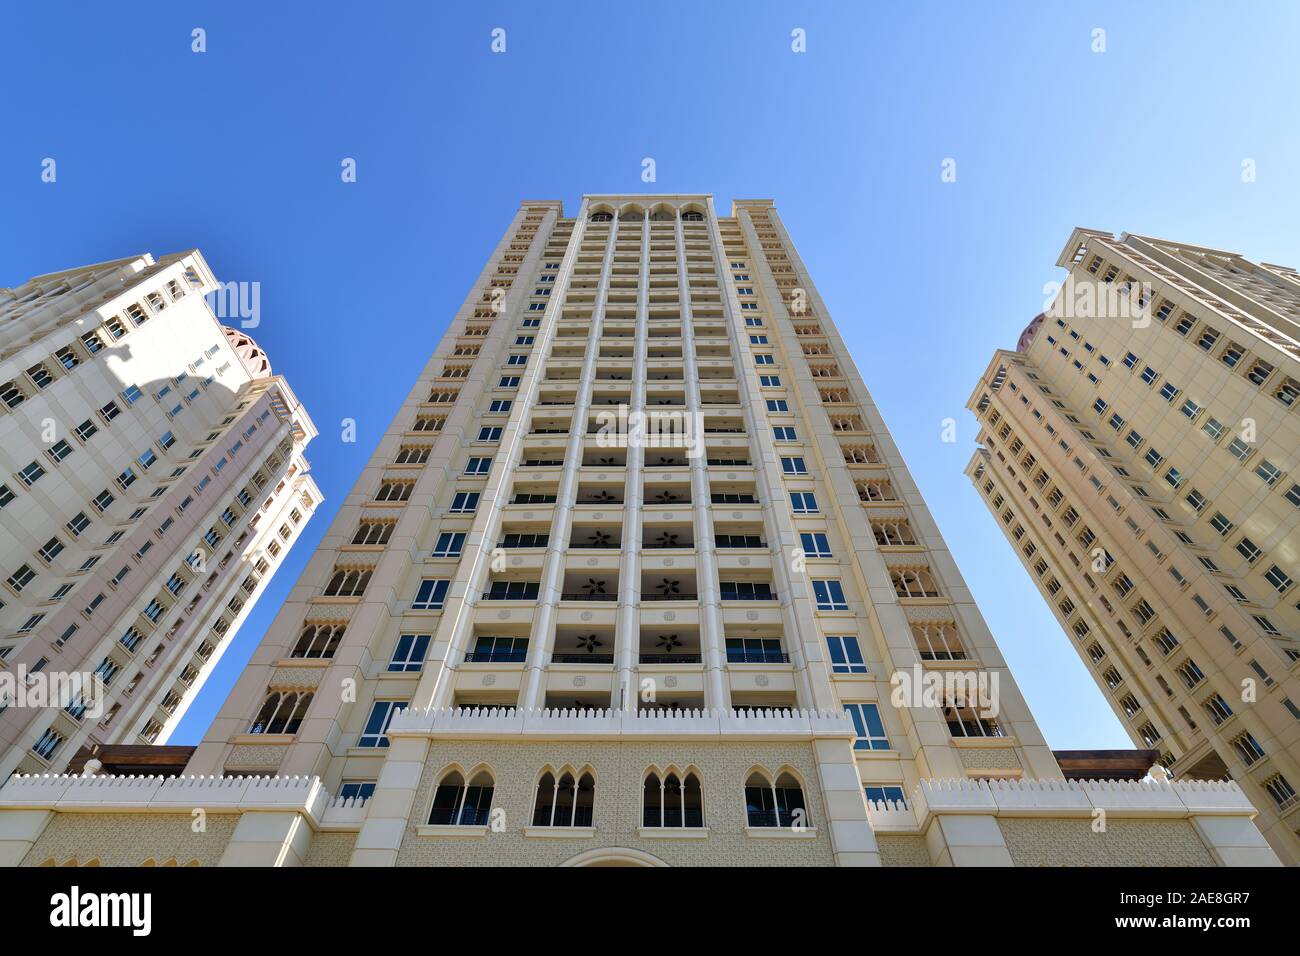 Edificio residencial de gran altura de estilo árabe, Qatar Foto de stock